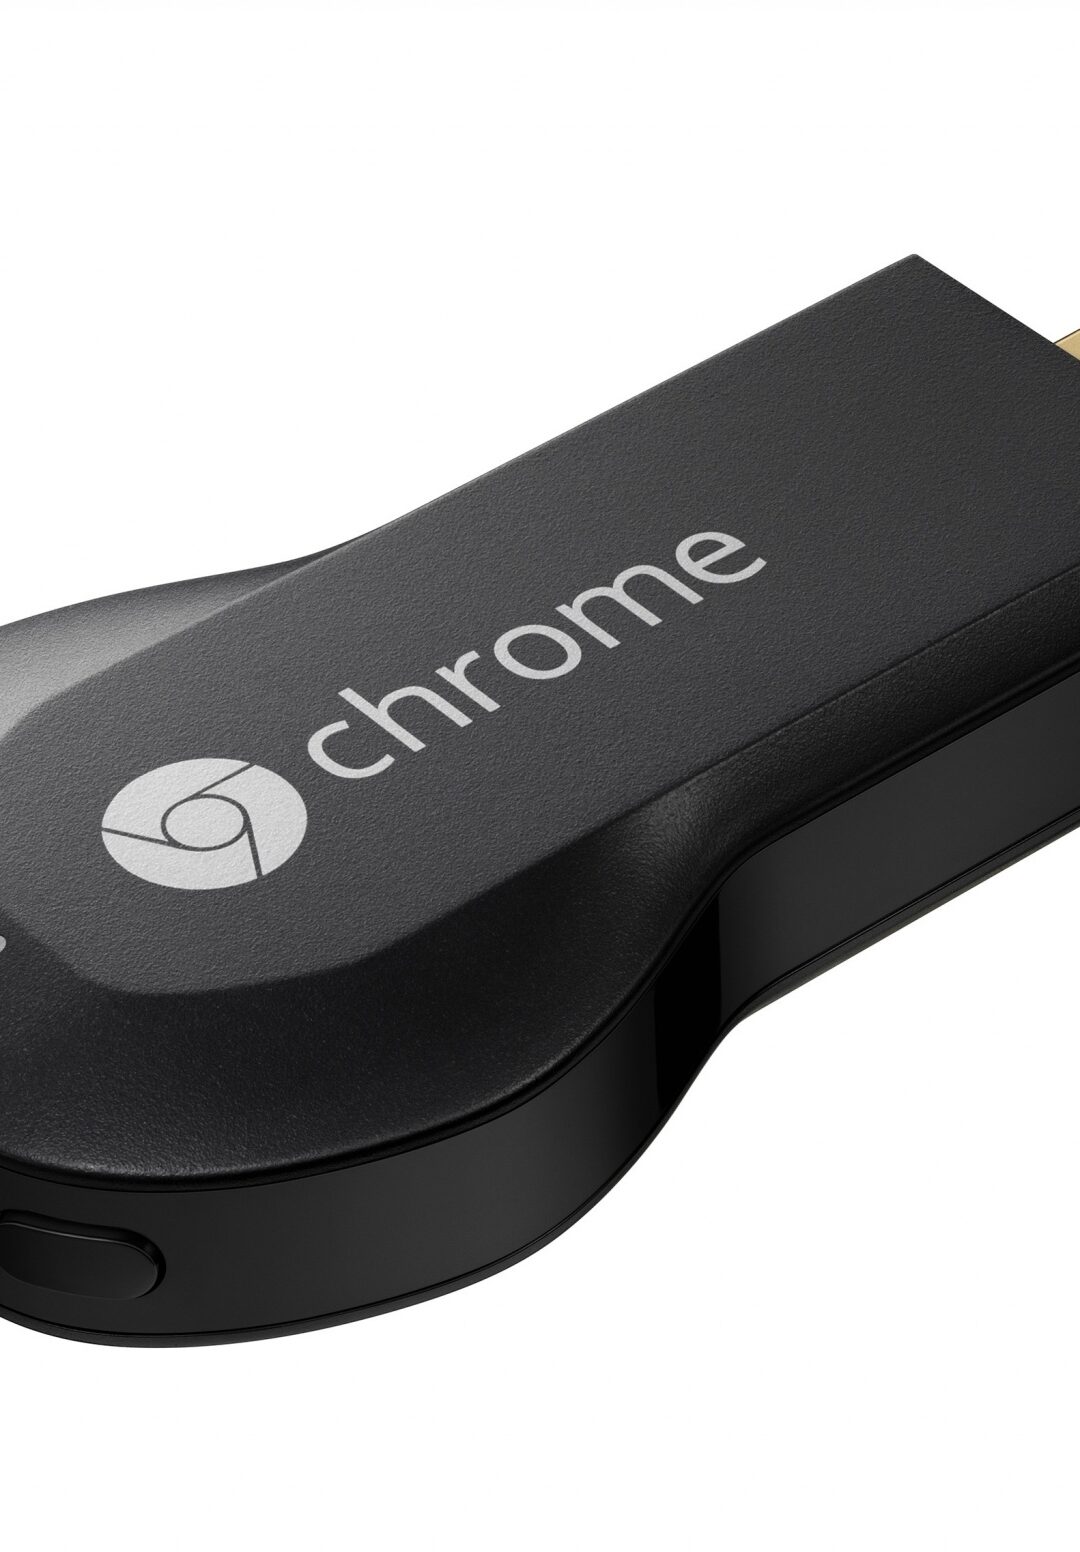 Chromecast: la TV di Google in tasca